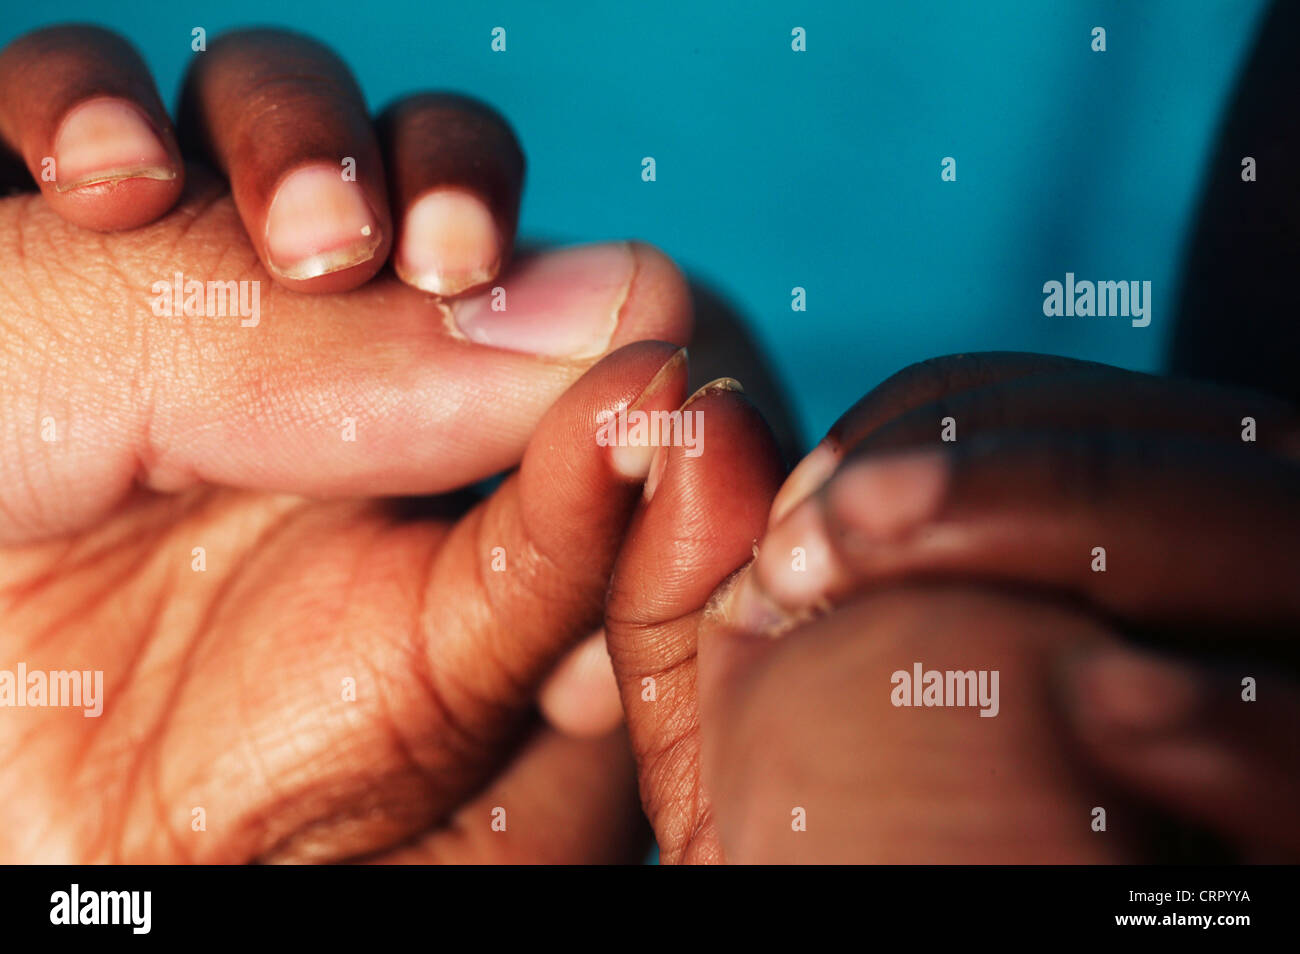 Adulto manos sostienen la mano de un niño padece malnutrición Edematus y deformación de los dedos de la mano Foto de stock